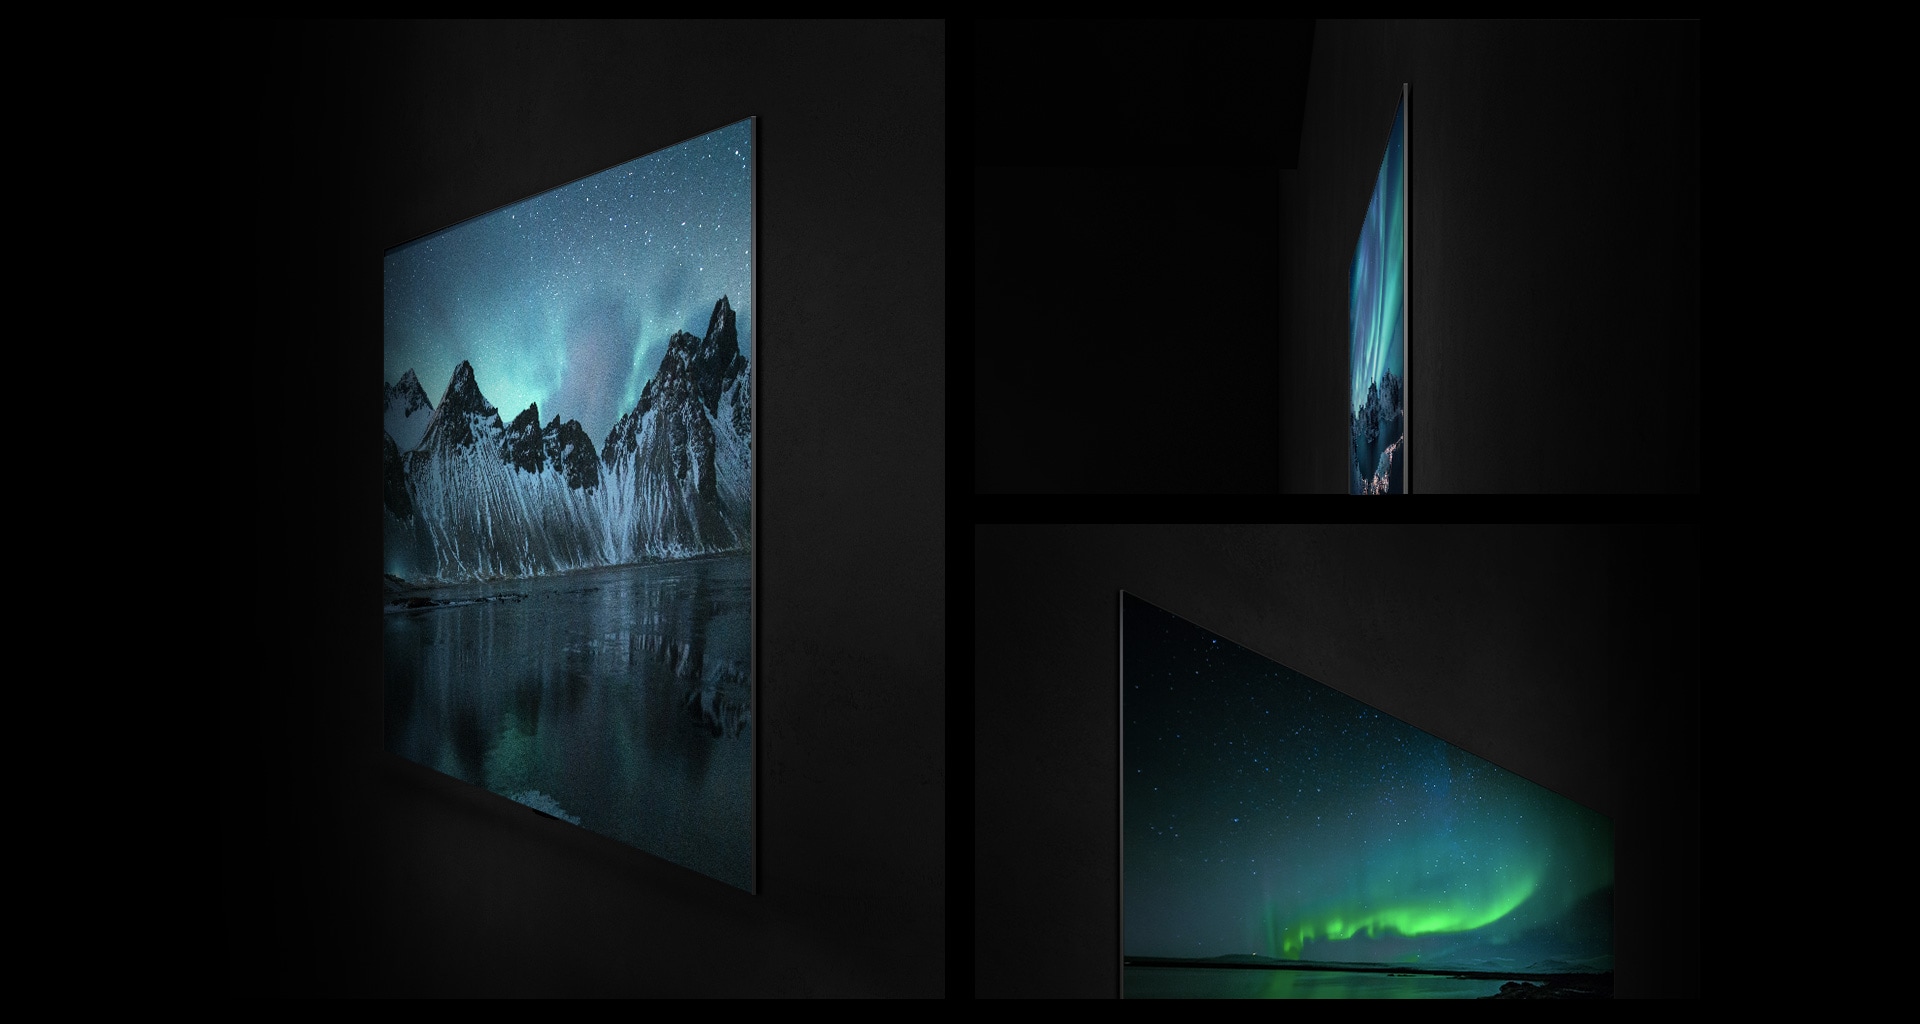 מוצגת במספר זוויות שמציגות את עיצוב הגלריה והצד האחורי השטוח LG OLED טלוויזיית